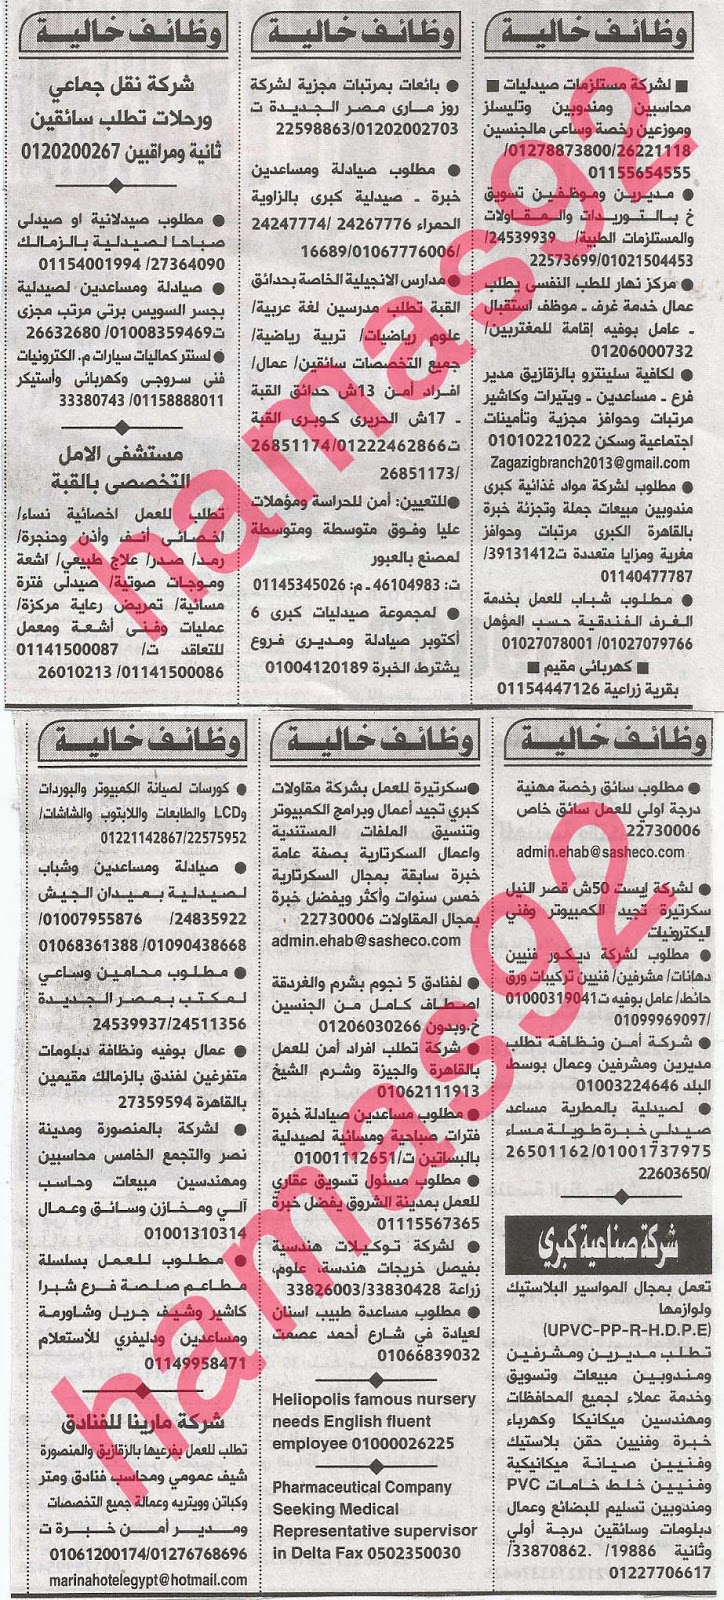 وظائف خالية فى جريدة الاهرام الجمعة 16-08-2013 5